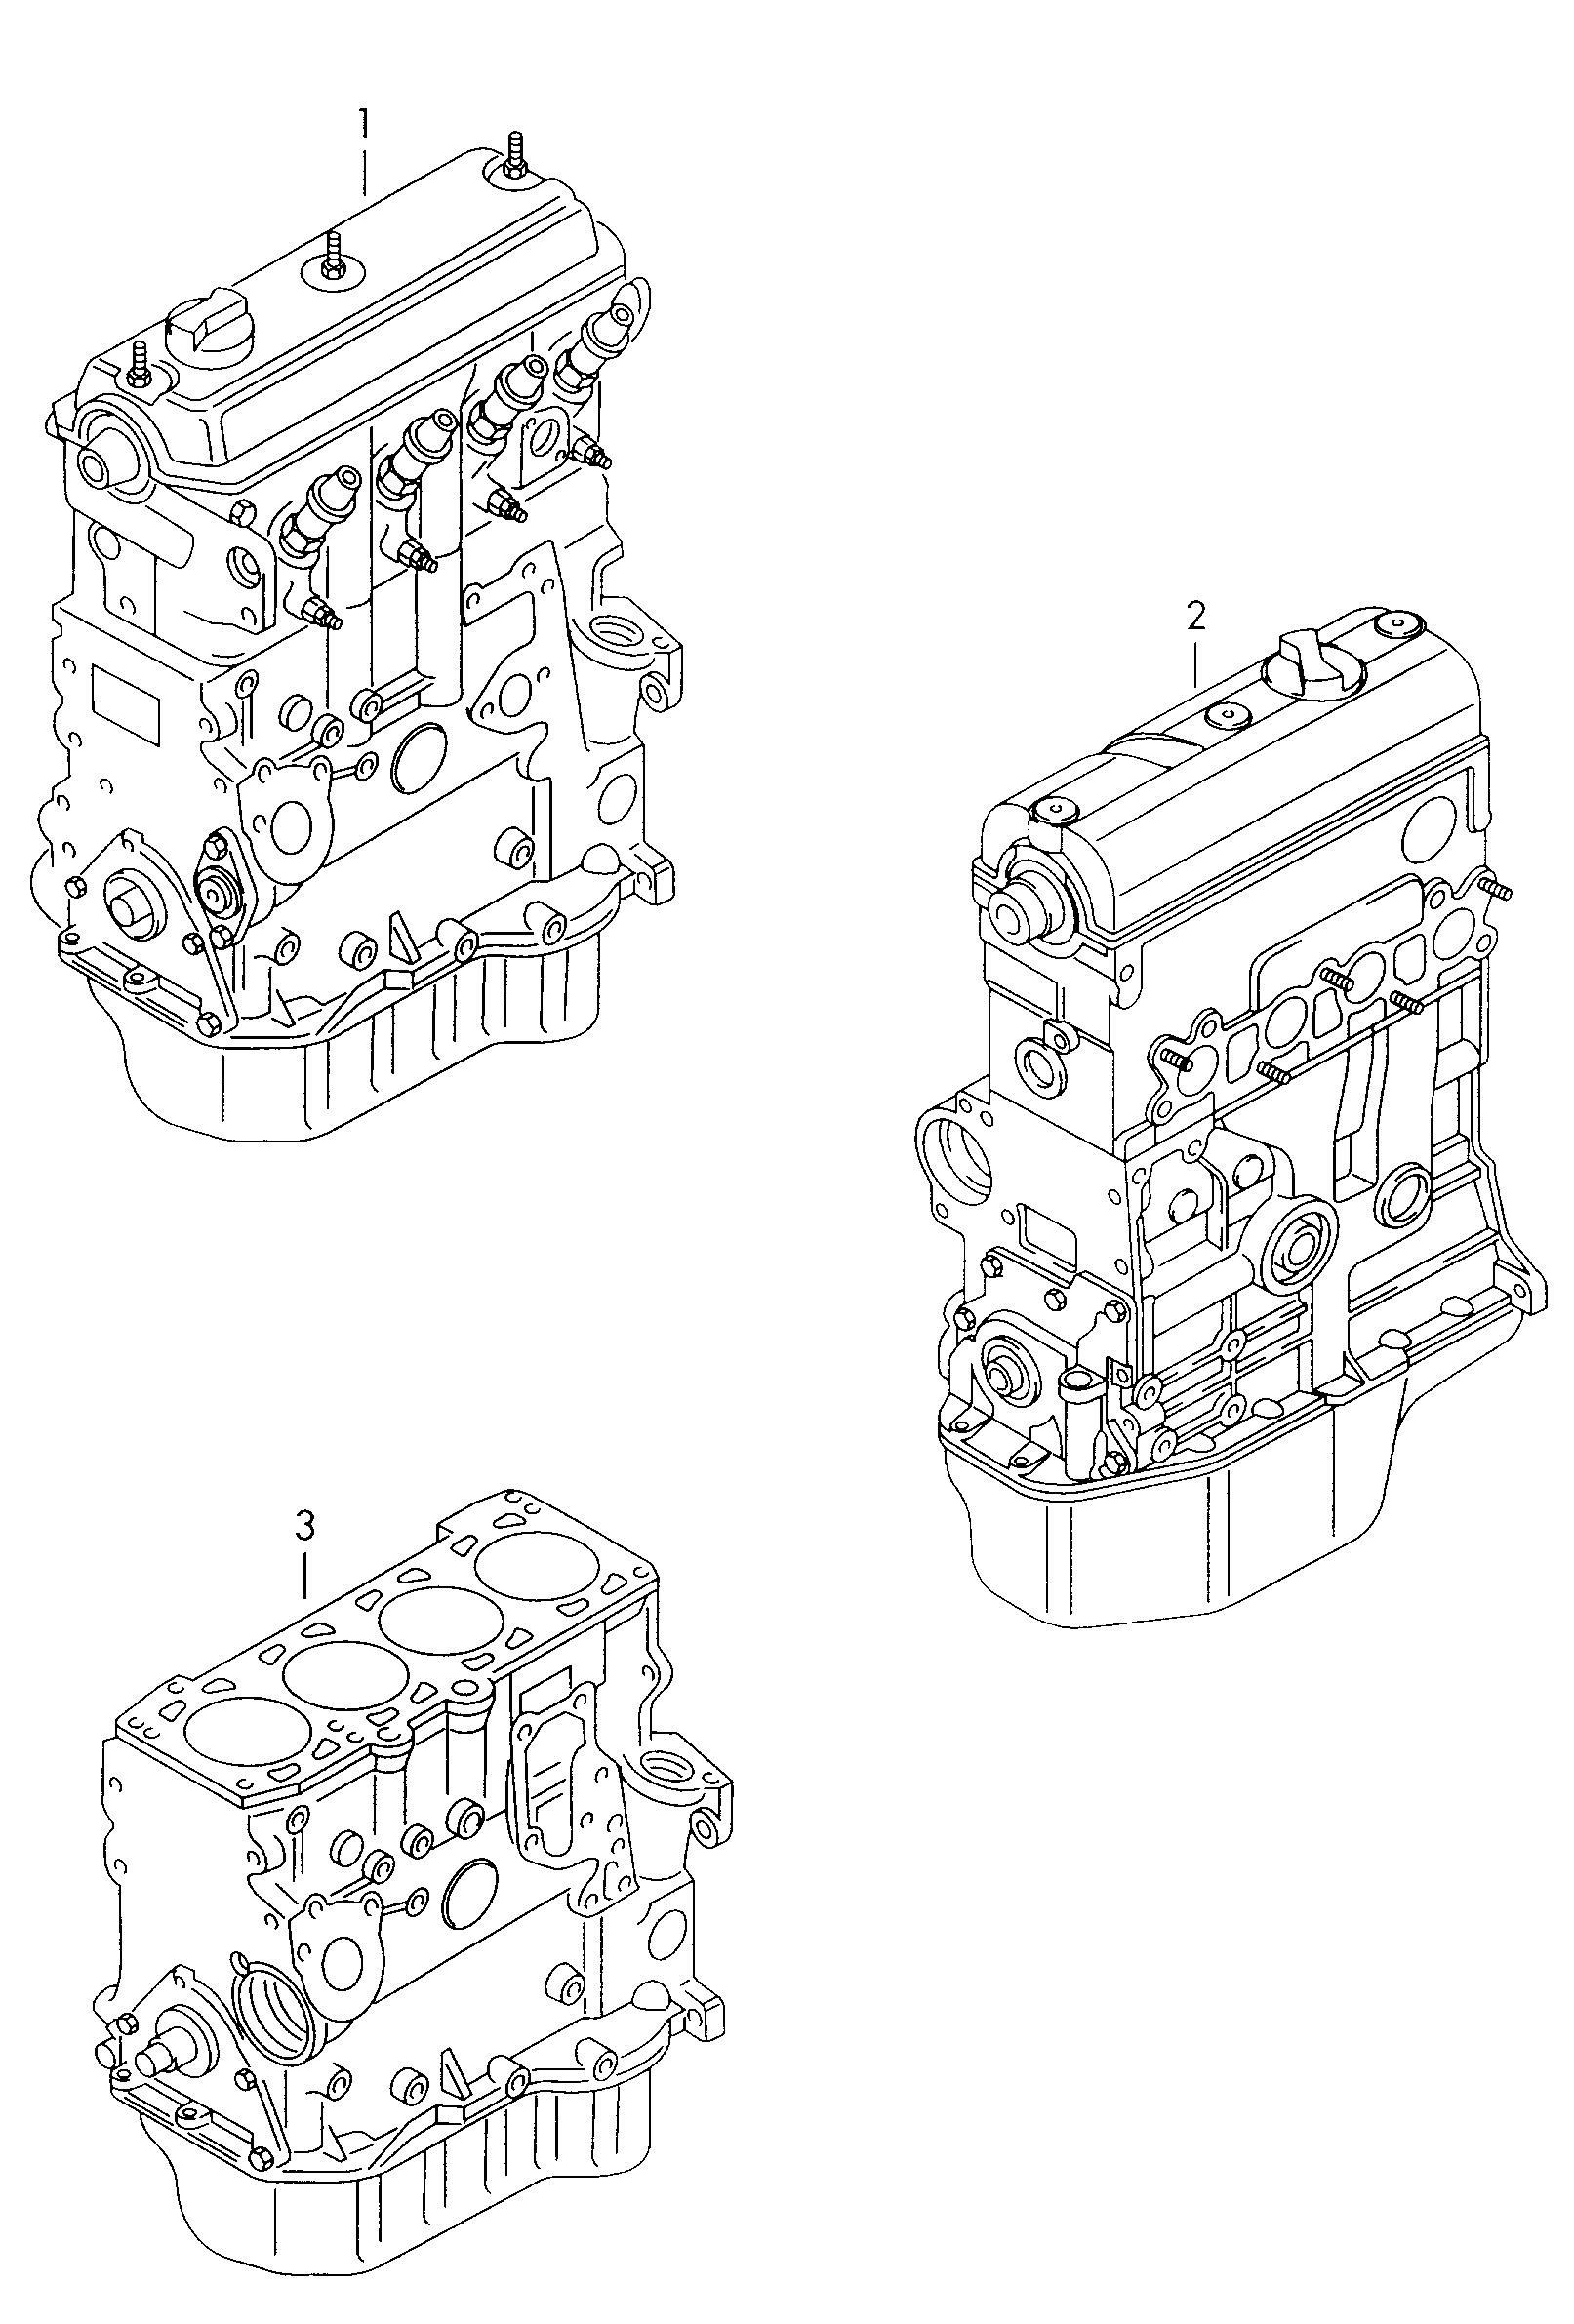 1012 1068 - Diesel-Industrie-Motore - imd